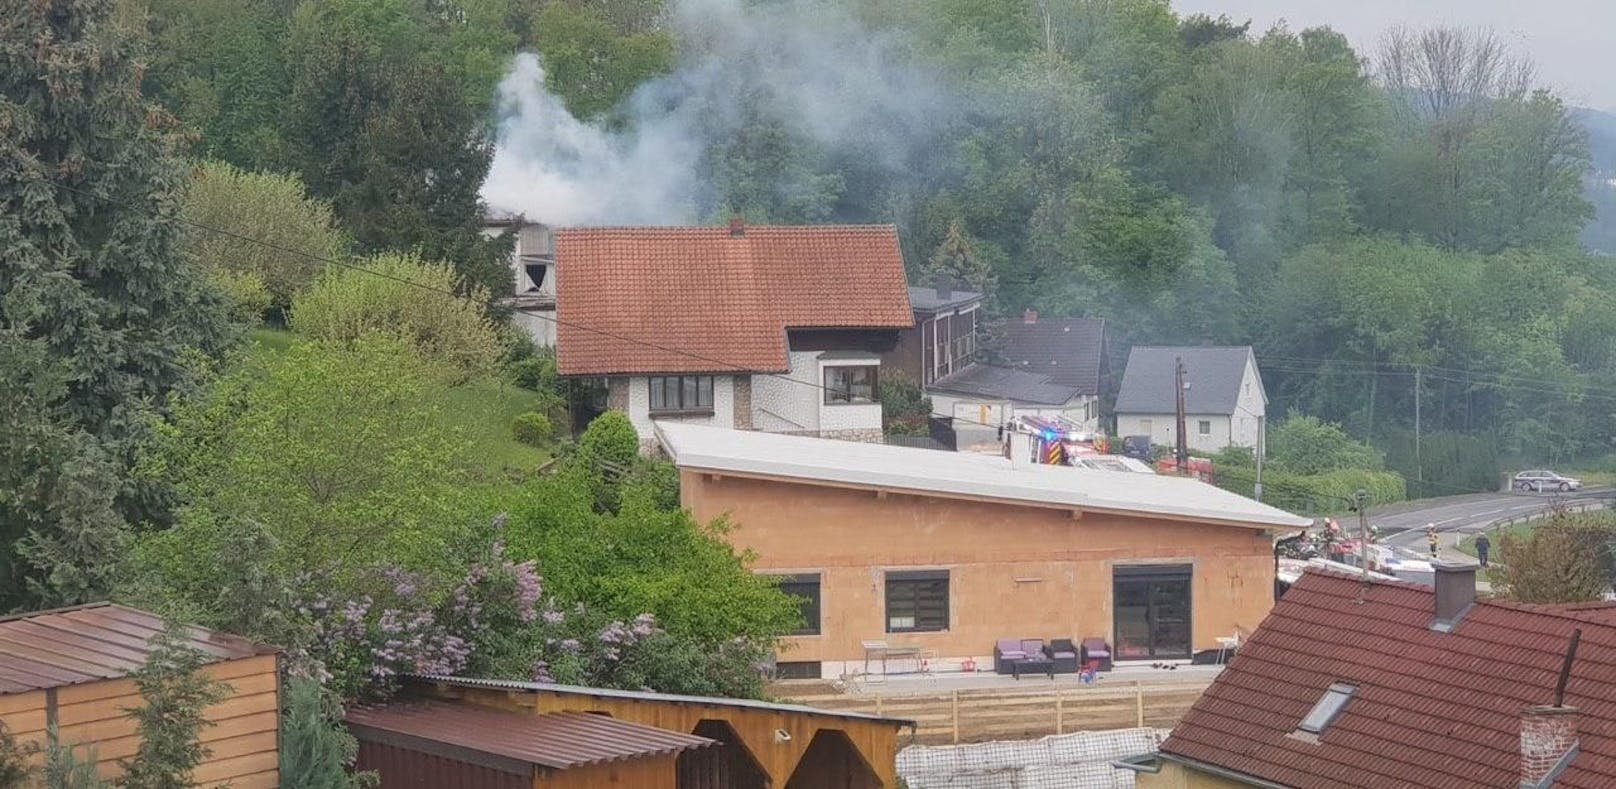 Sonntag in den frühen Morgenstunden wurde die Feuerwehr zu einem Brand in einer Tischlerei in Schweinbach bei Engerwitzdorf gerufen. Schon bei der Anfahrt war dichter Rauch zu sehen.